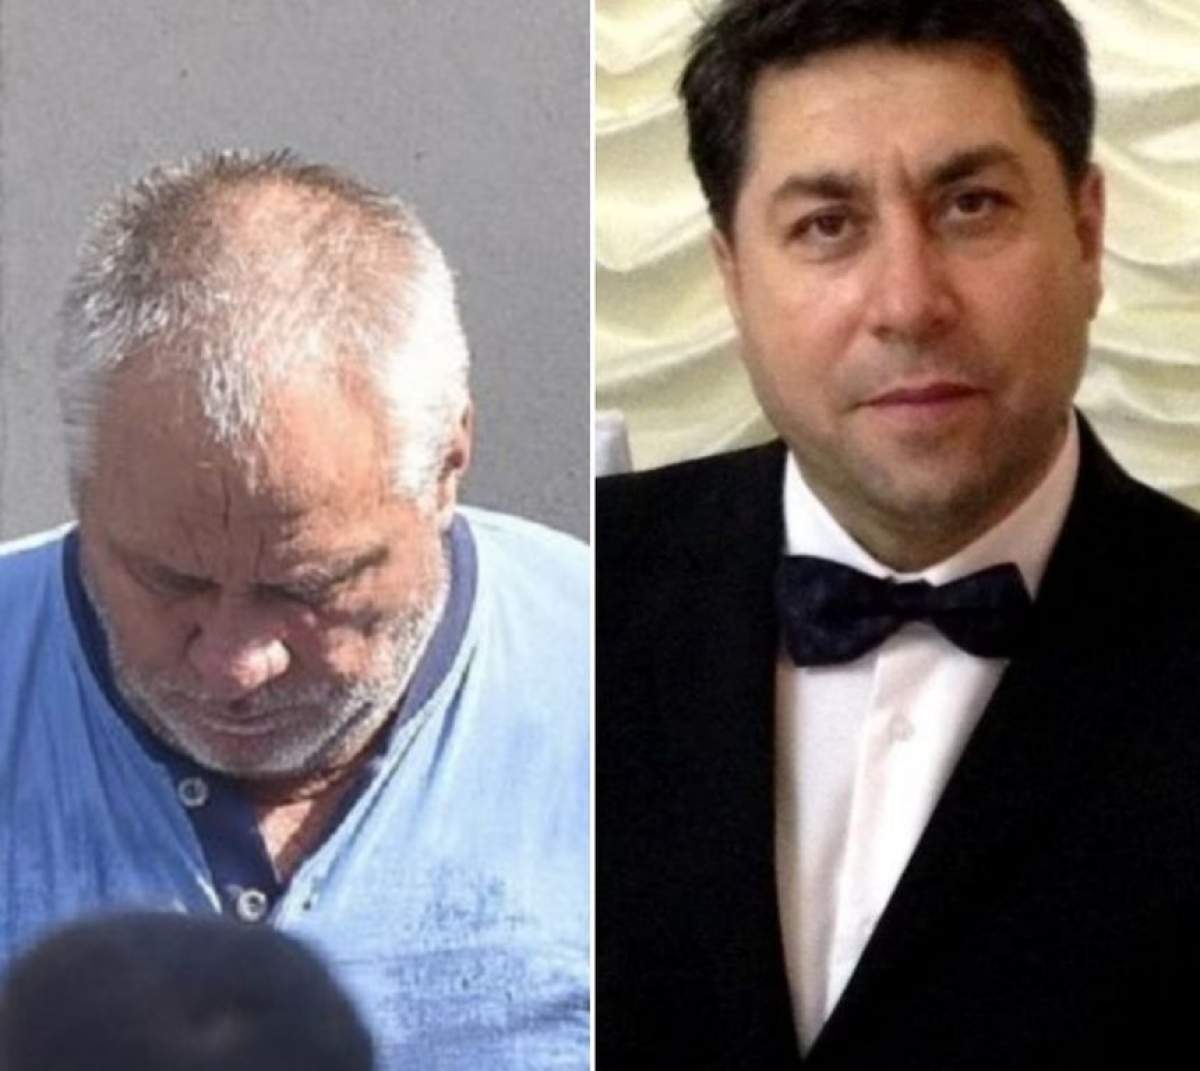 Al doilea avocat din oficiul al lui Gheorghe Dincă este un fost poliţist acuzat de luare de mită. Gabriel Adrinel Neagu neagă că a lucrat în MAI